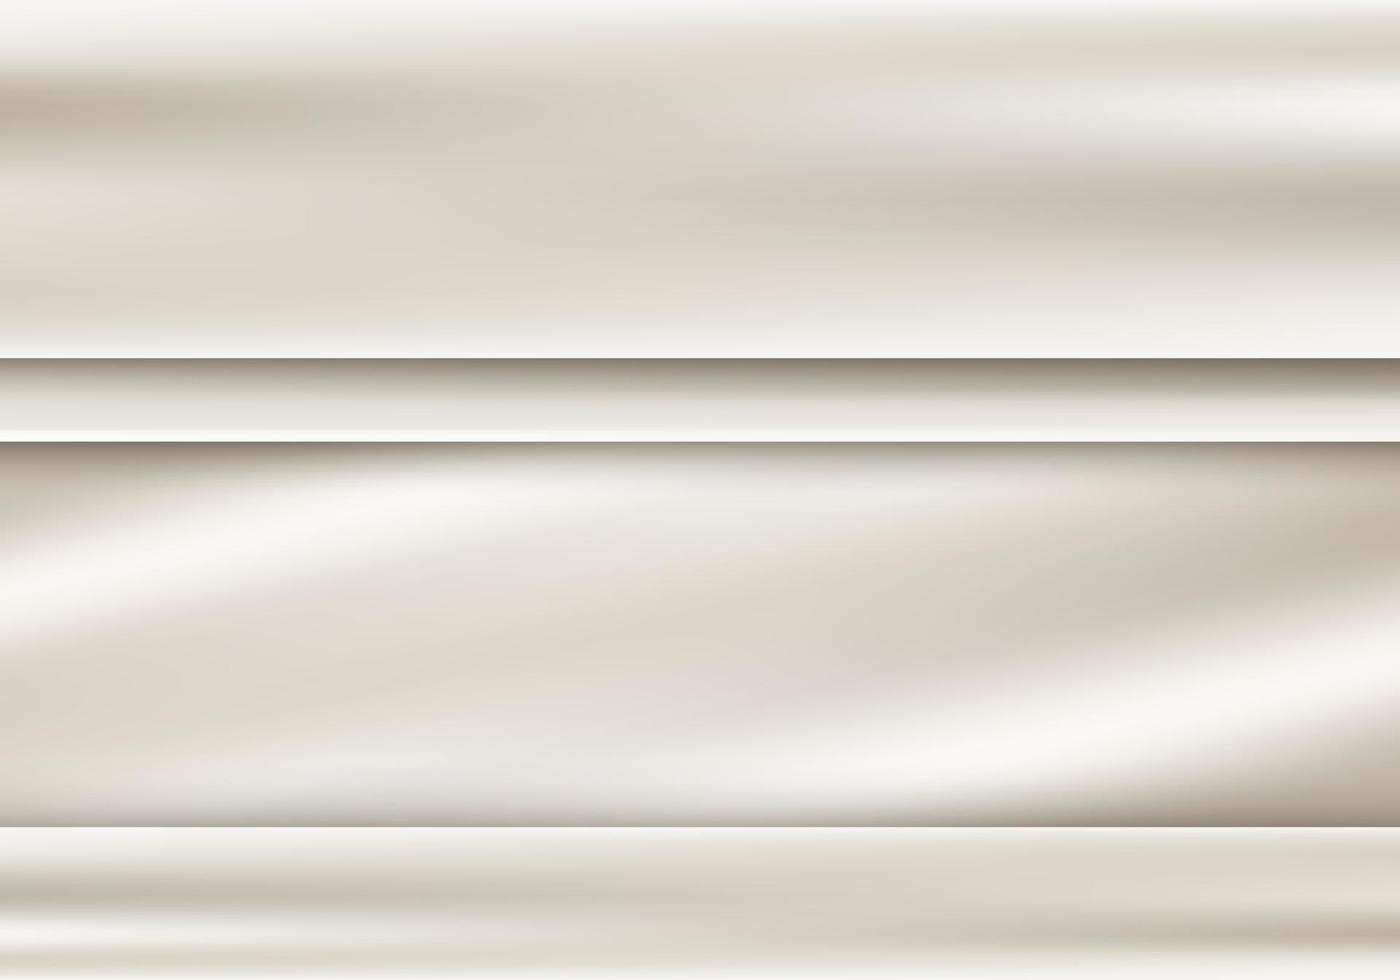 abstrato 3d tecido branco ou dourado modelo de fundo e textura estilo de luxo vetor